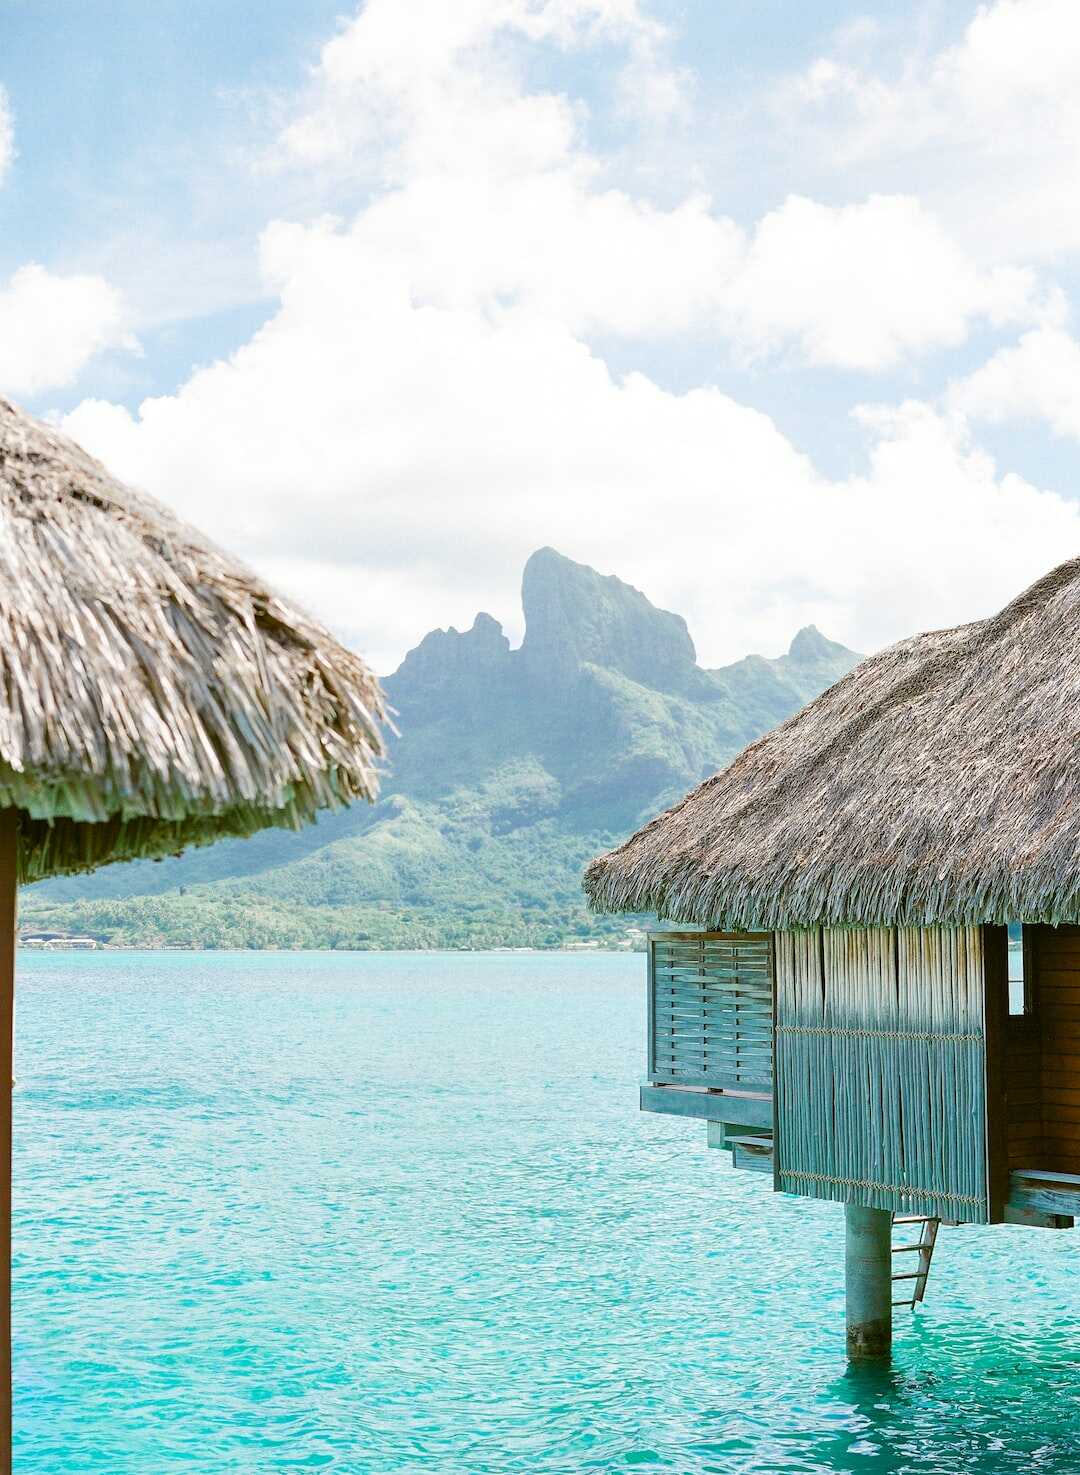 Profitez des plages paradisiaques de Tahiti : une expérience inoubliable !